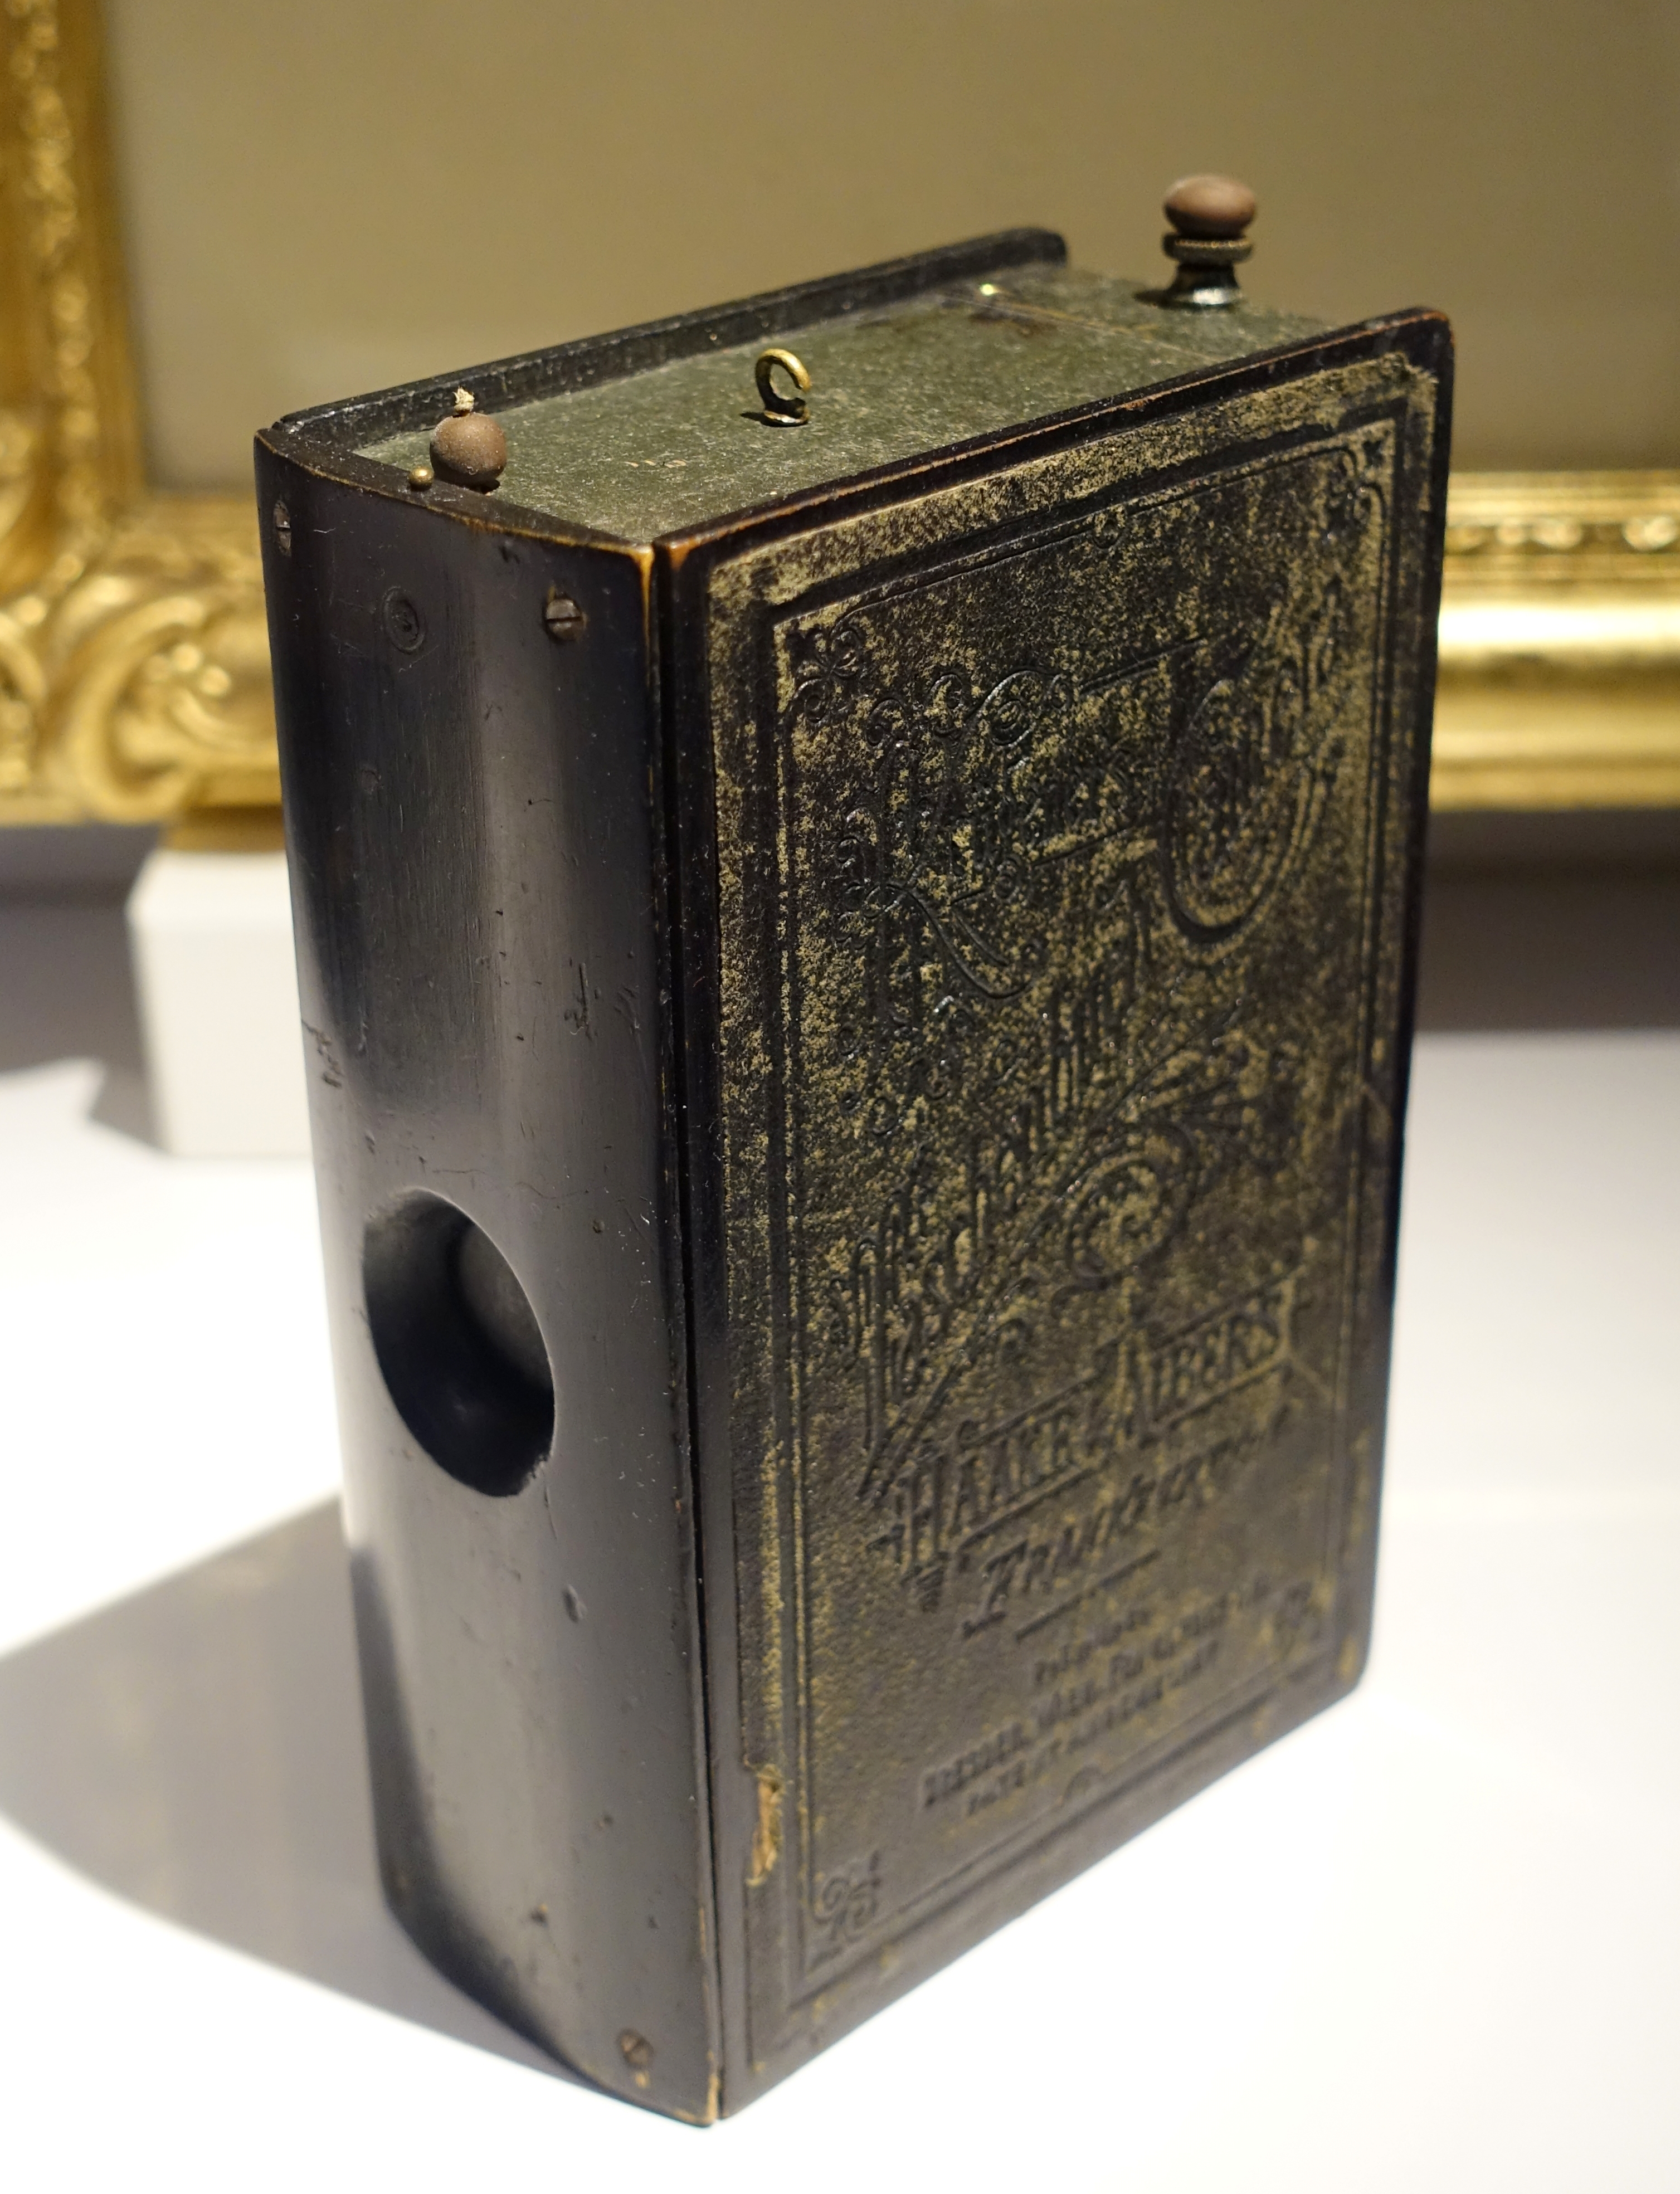 Krugener's Taschenbuch, detective's box camera in form of a hymn book, 1895-1905 AD, TM16444 - Tekniska museet - Stockholm, Sweden - DSC01434